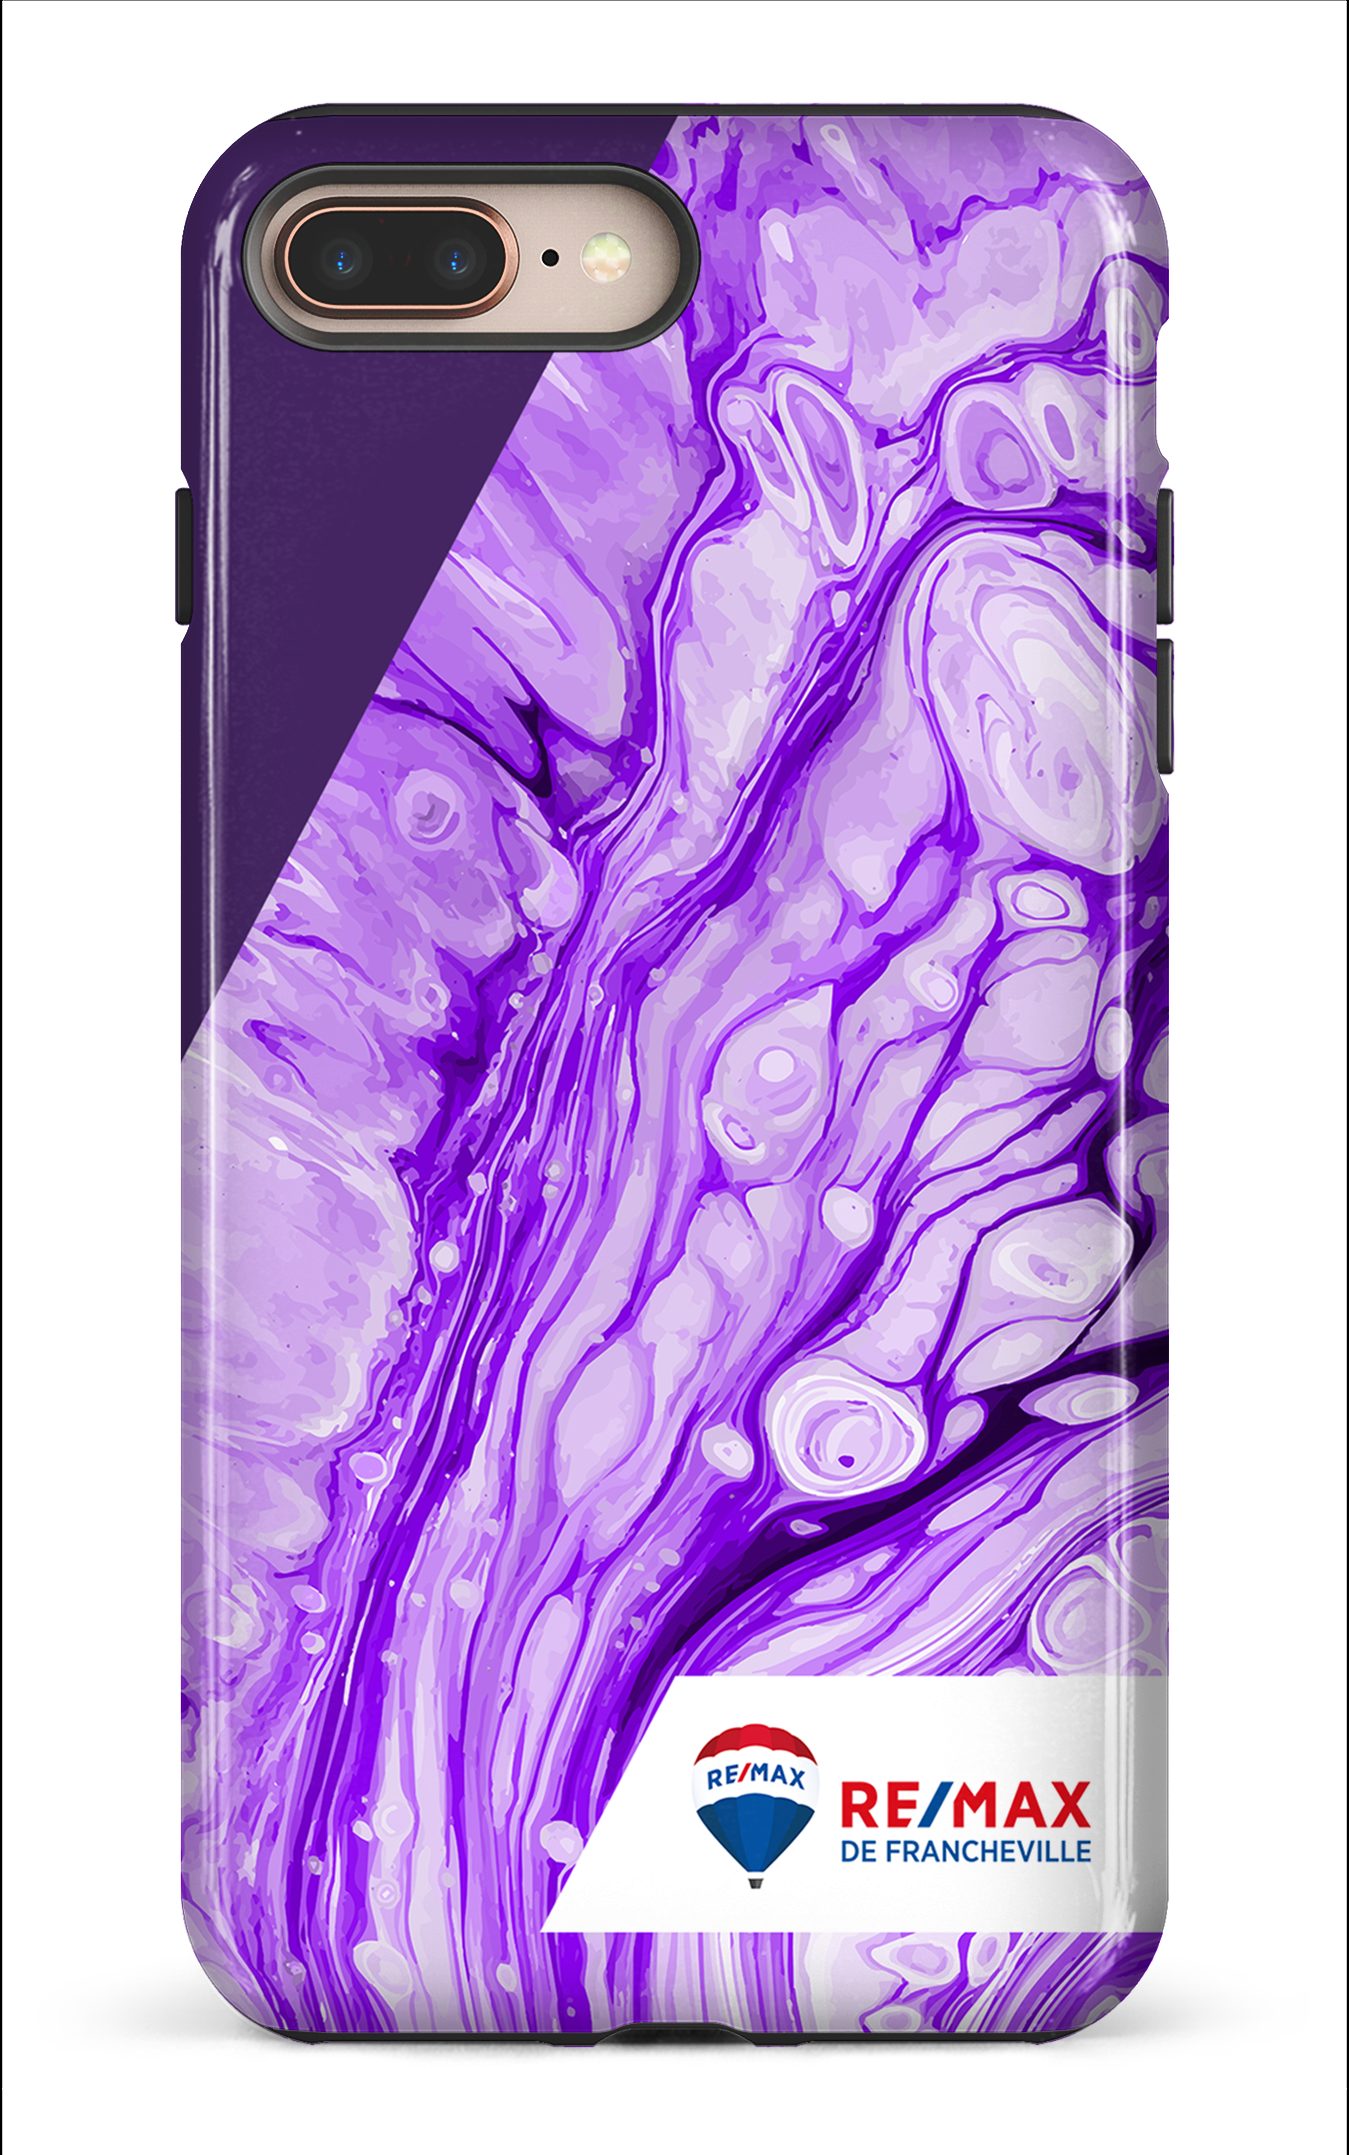 Peinture marbrée claire violette de Francheville - iPhone 8 Plus